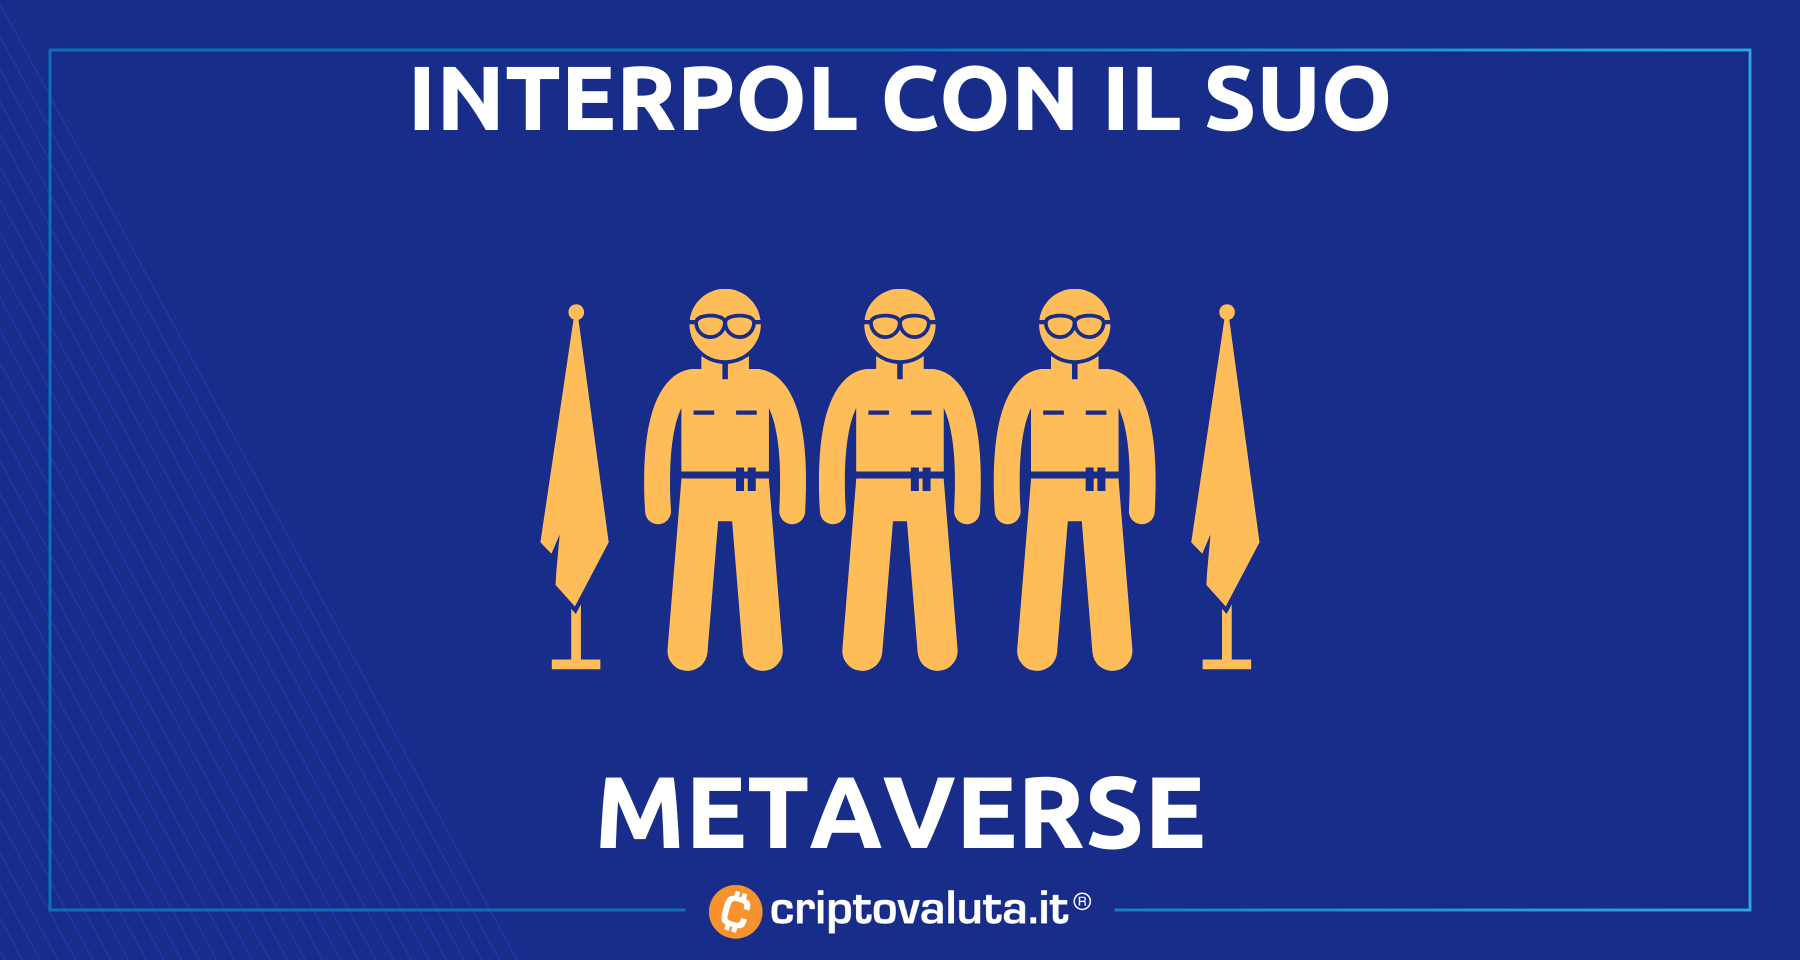 Anche l’Interpol sul suo metaverse | Continua la spinta “istituzionale”